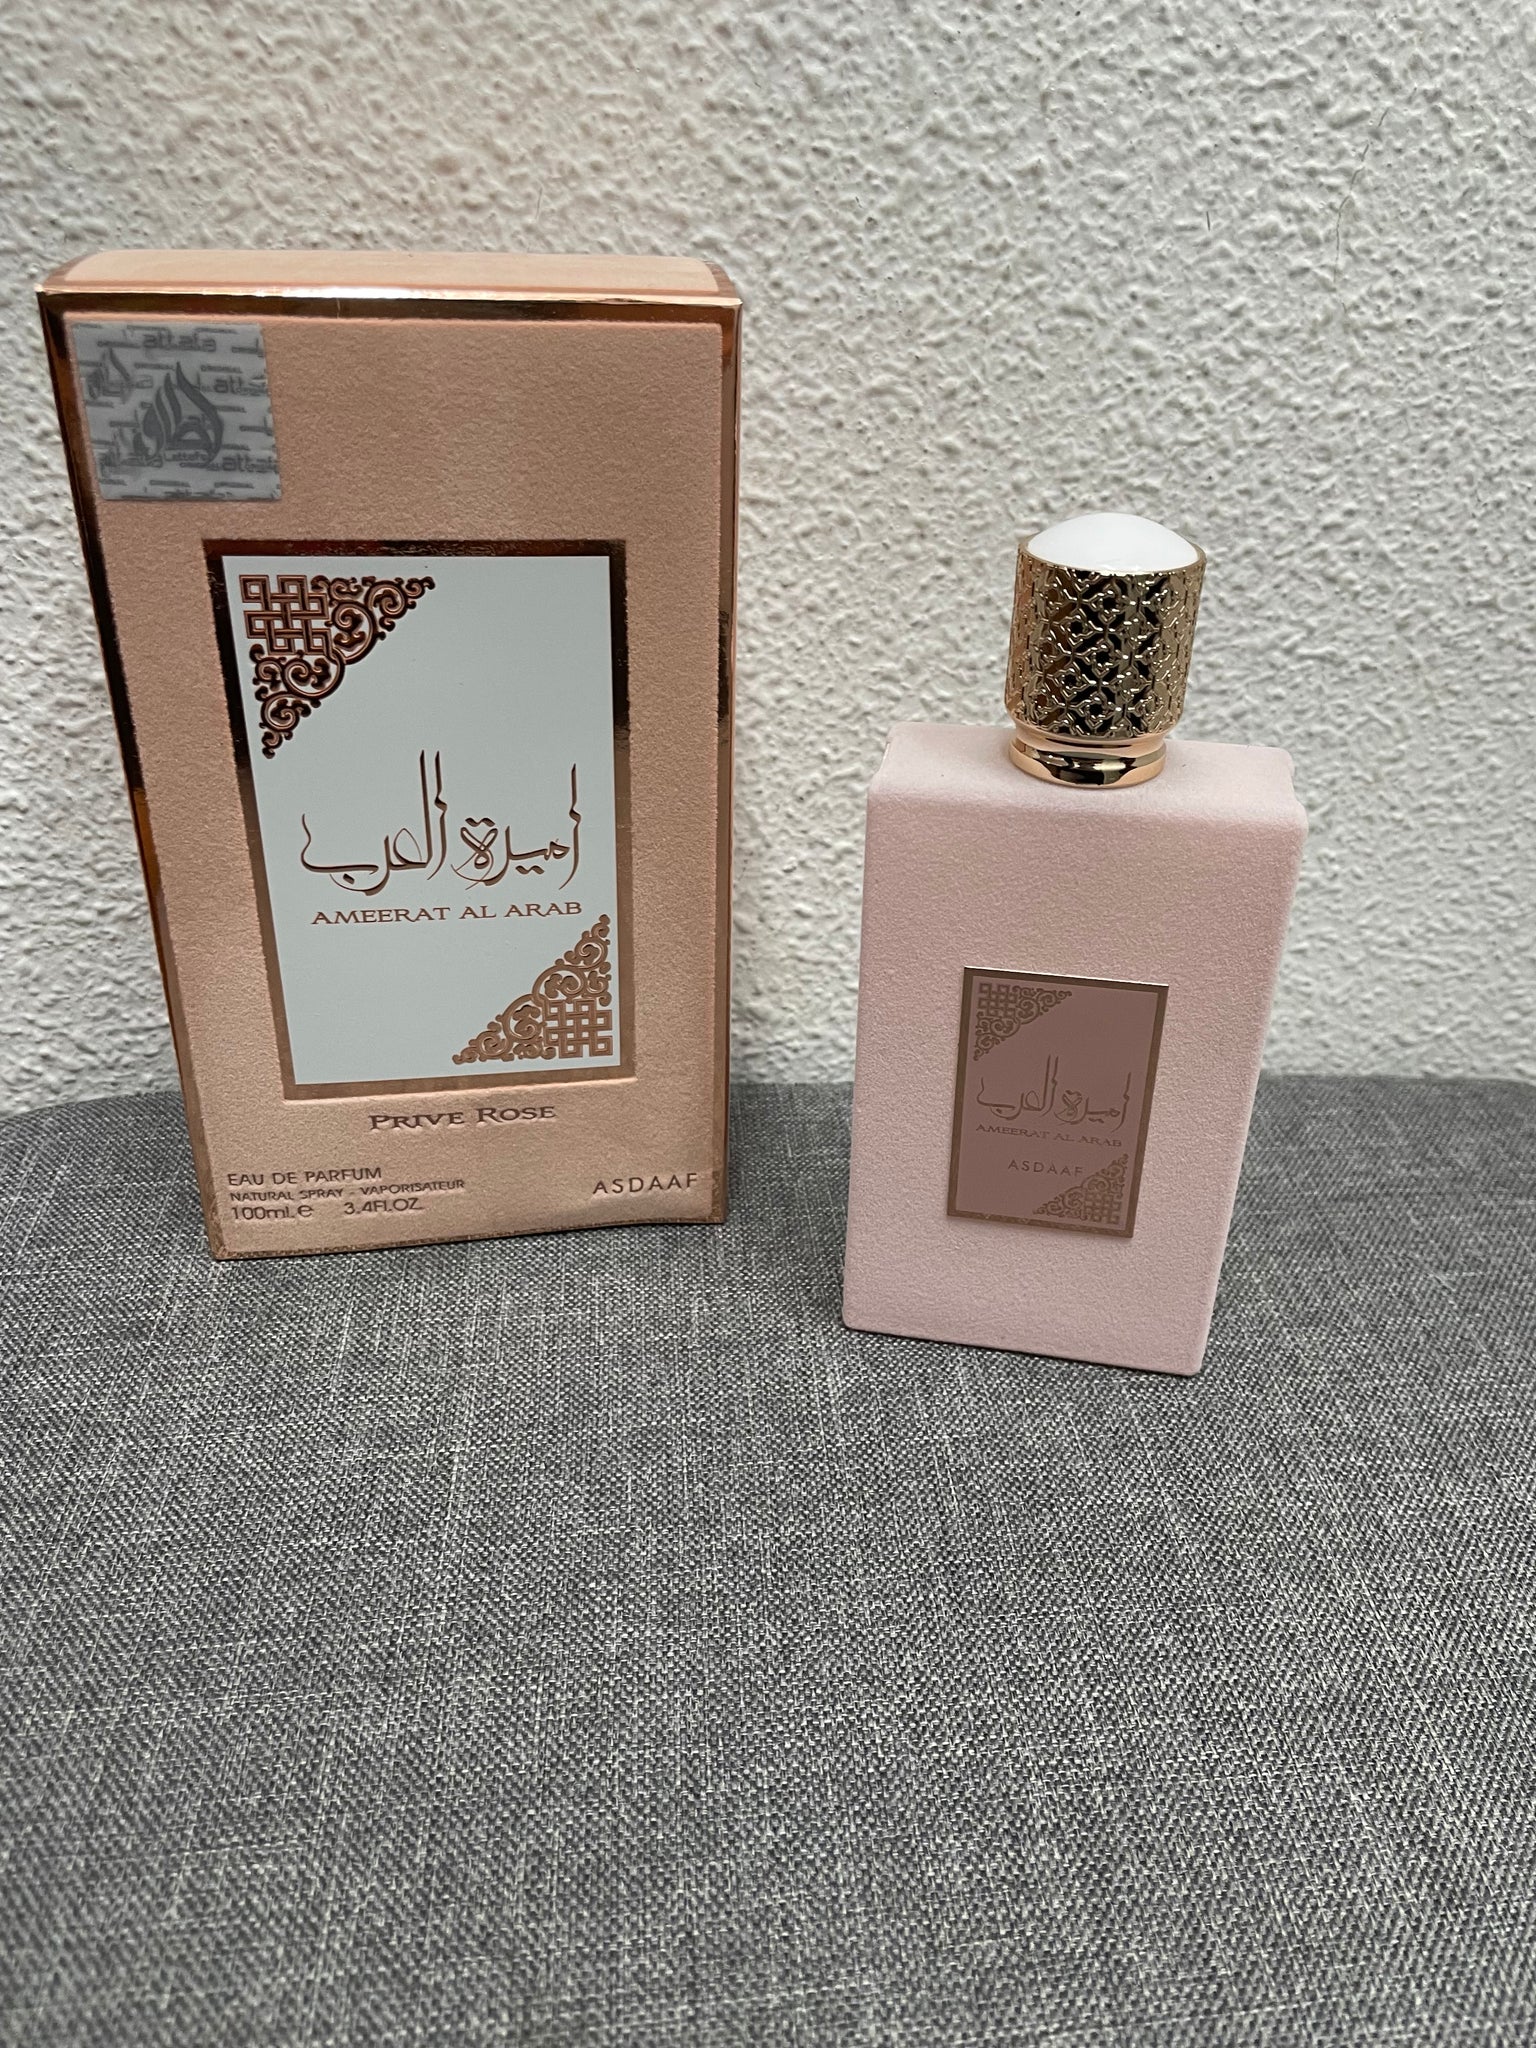 Perfume princesa de Arabia